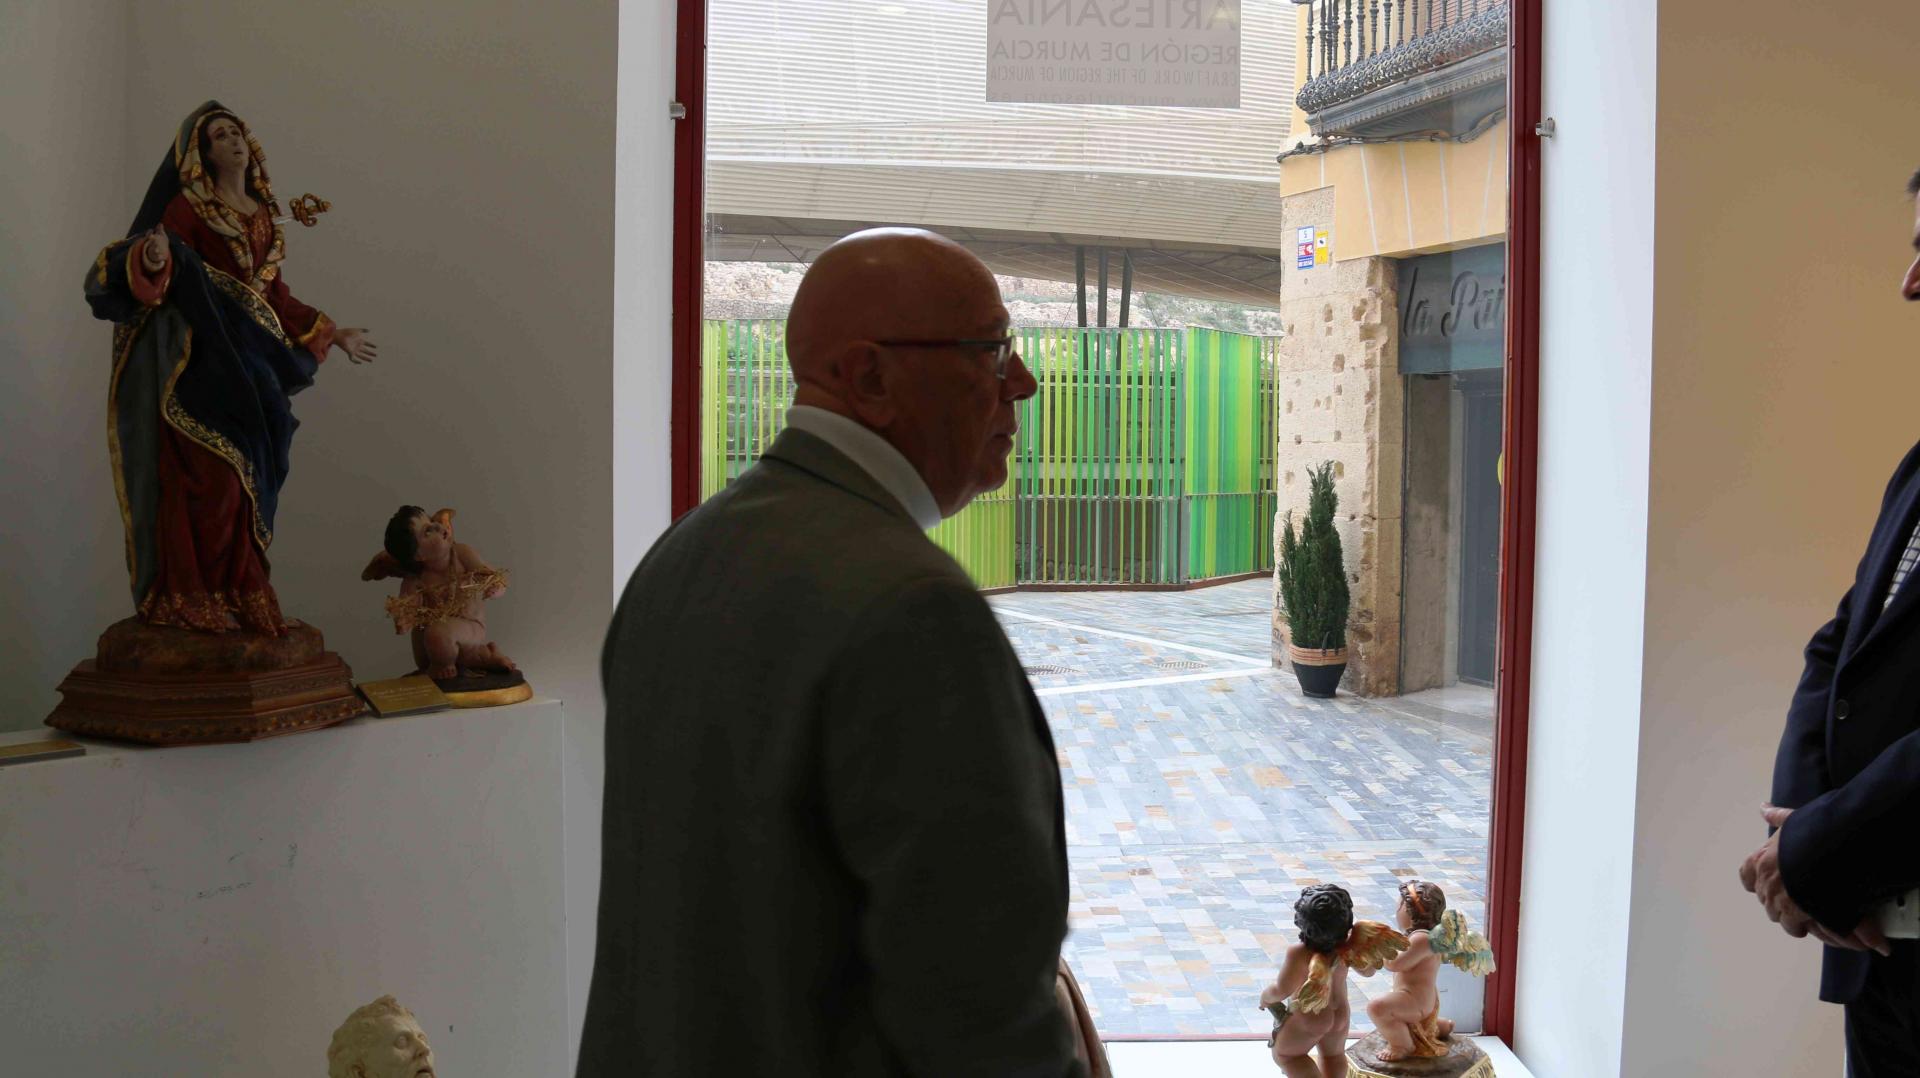 Exposición Imaginería Blázquez en Centro de Artesanía Cartagena